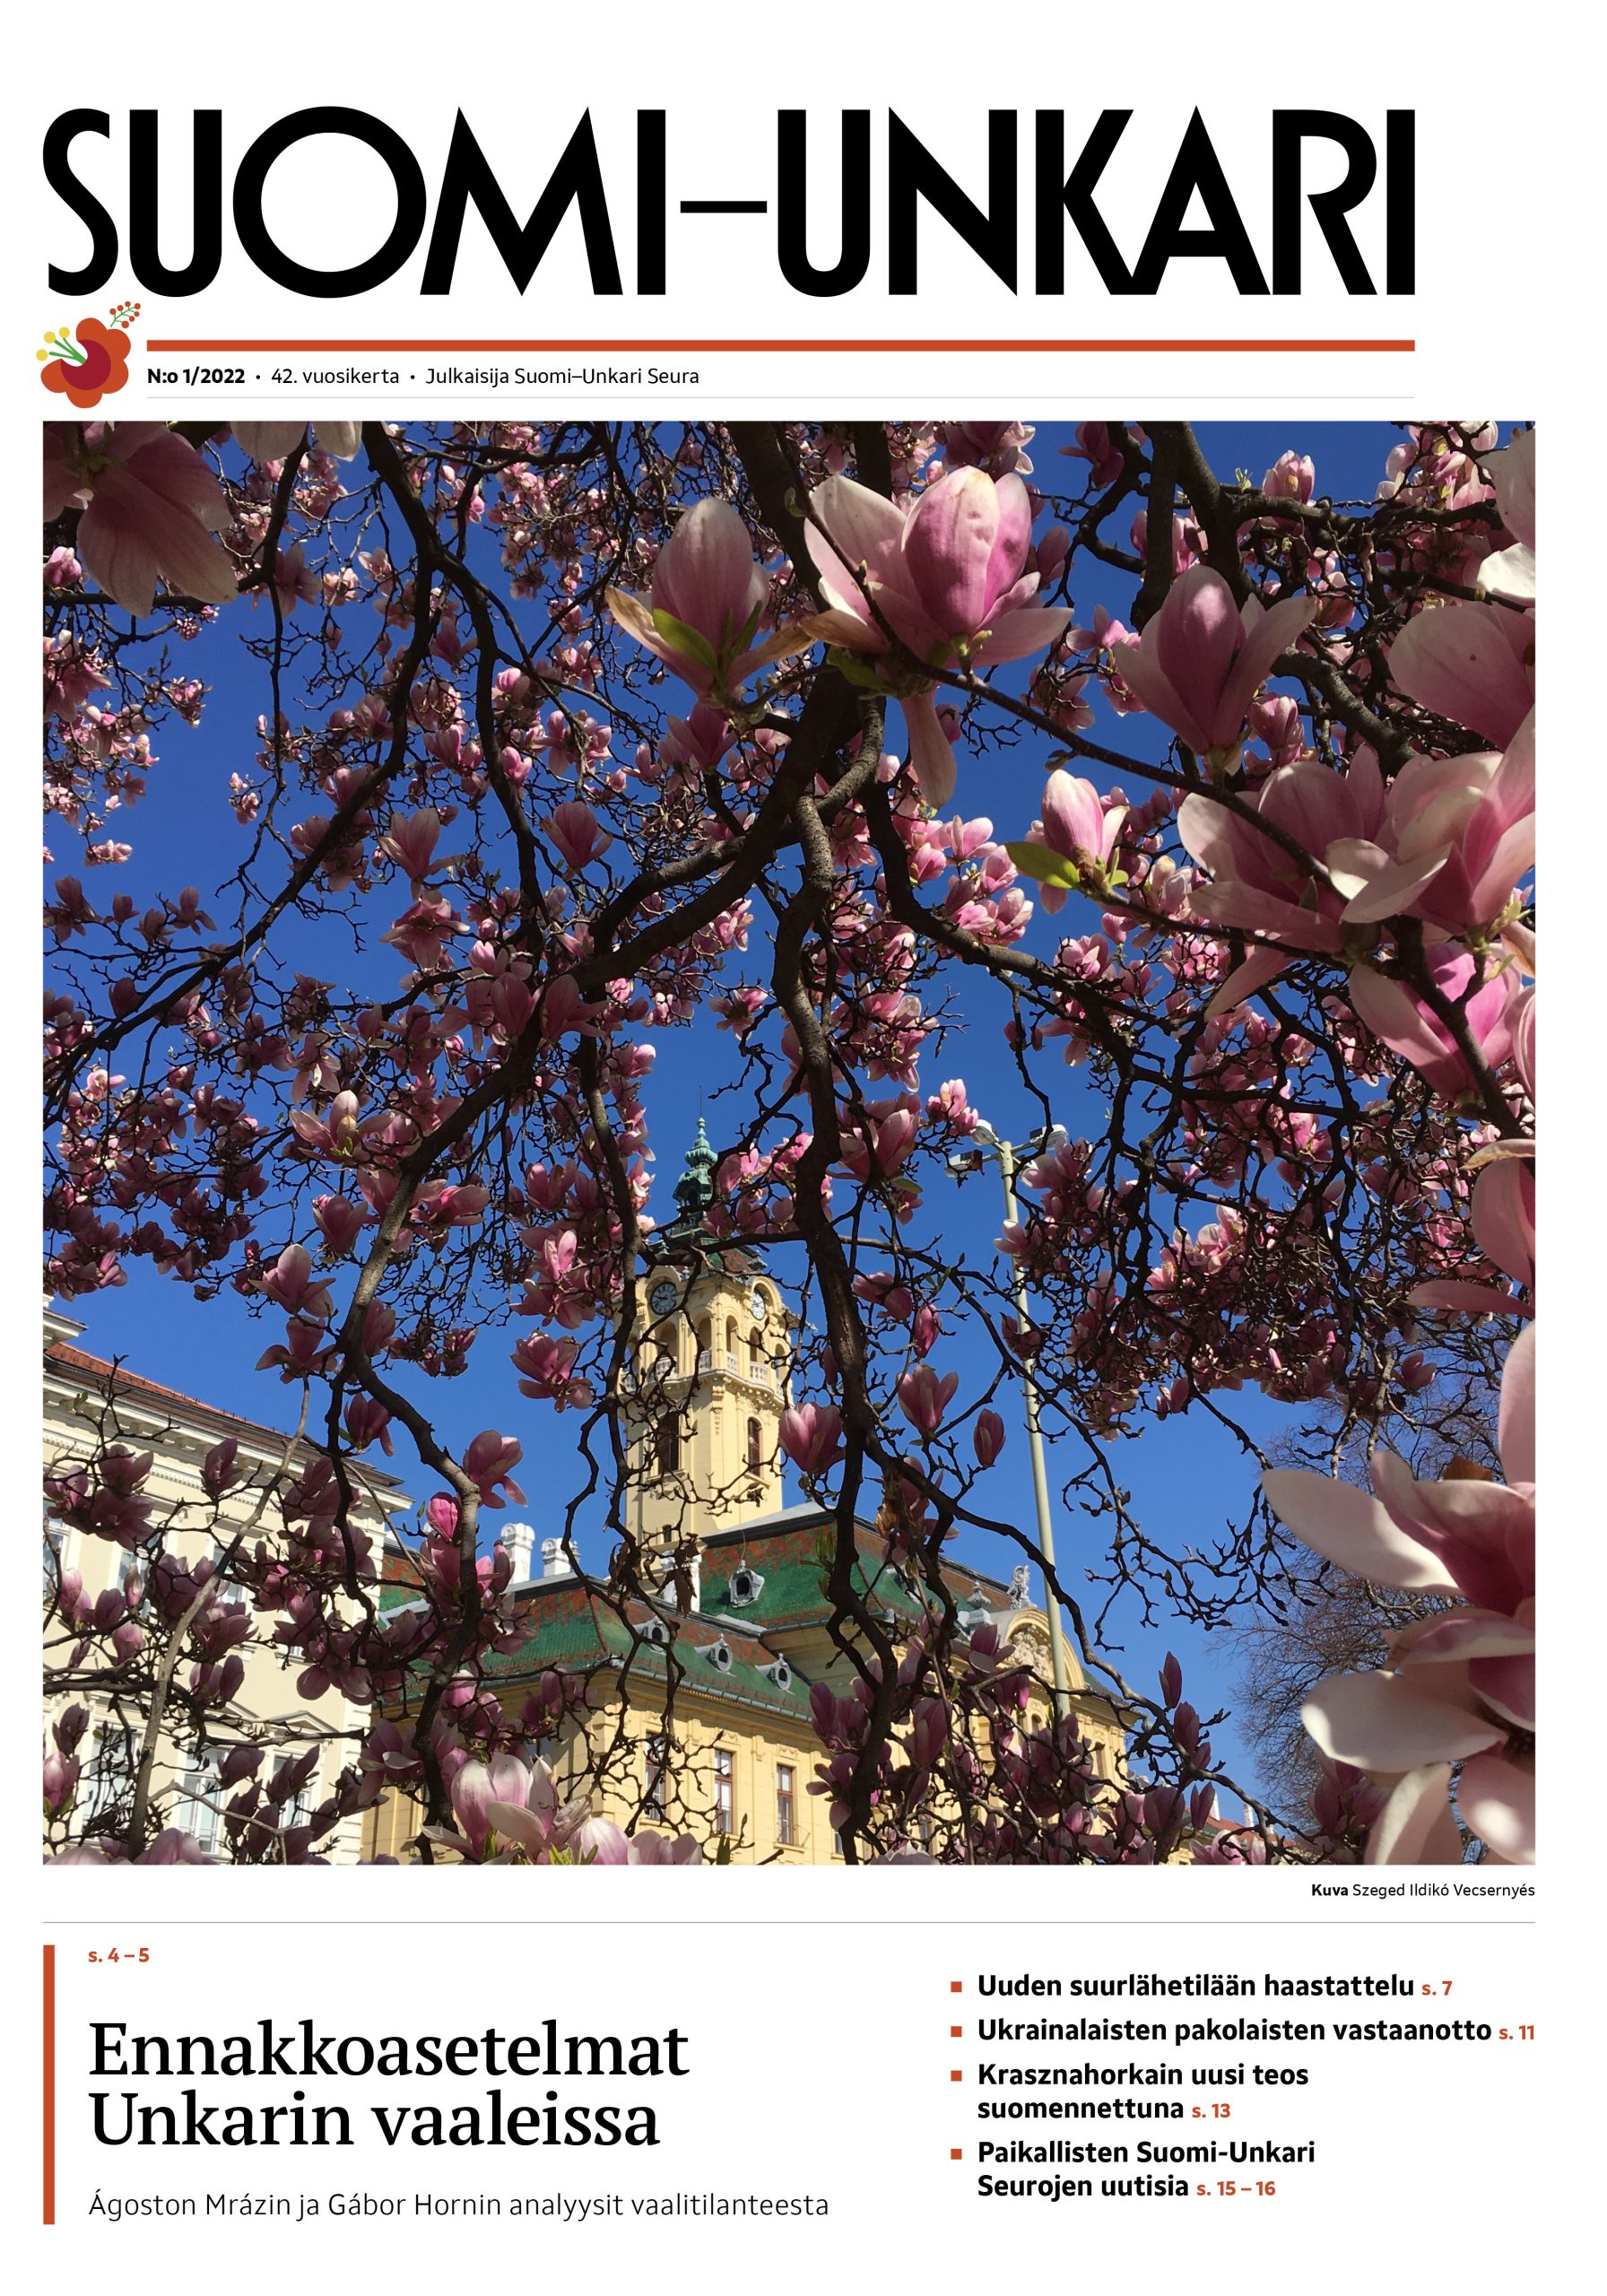 Keväinen kuva Szegedistä, keltainen torni vaaleanpunaisten kirsikkakukkien takana.